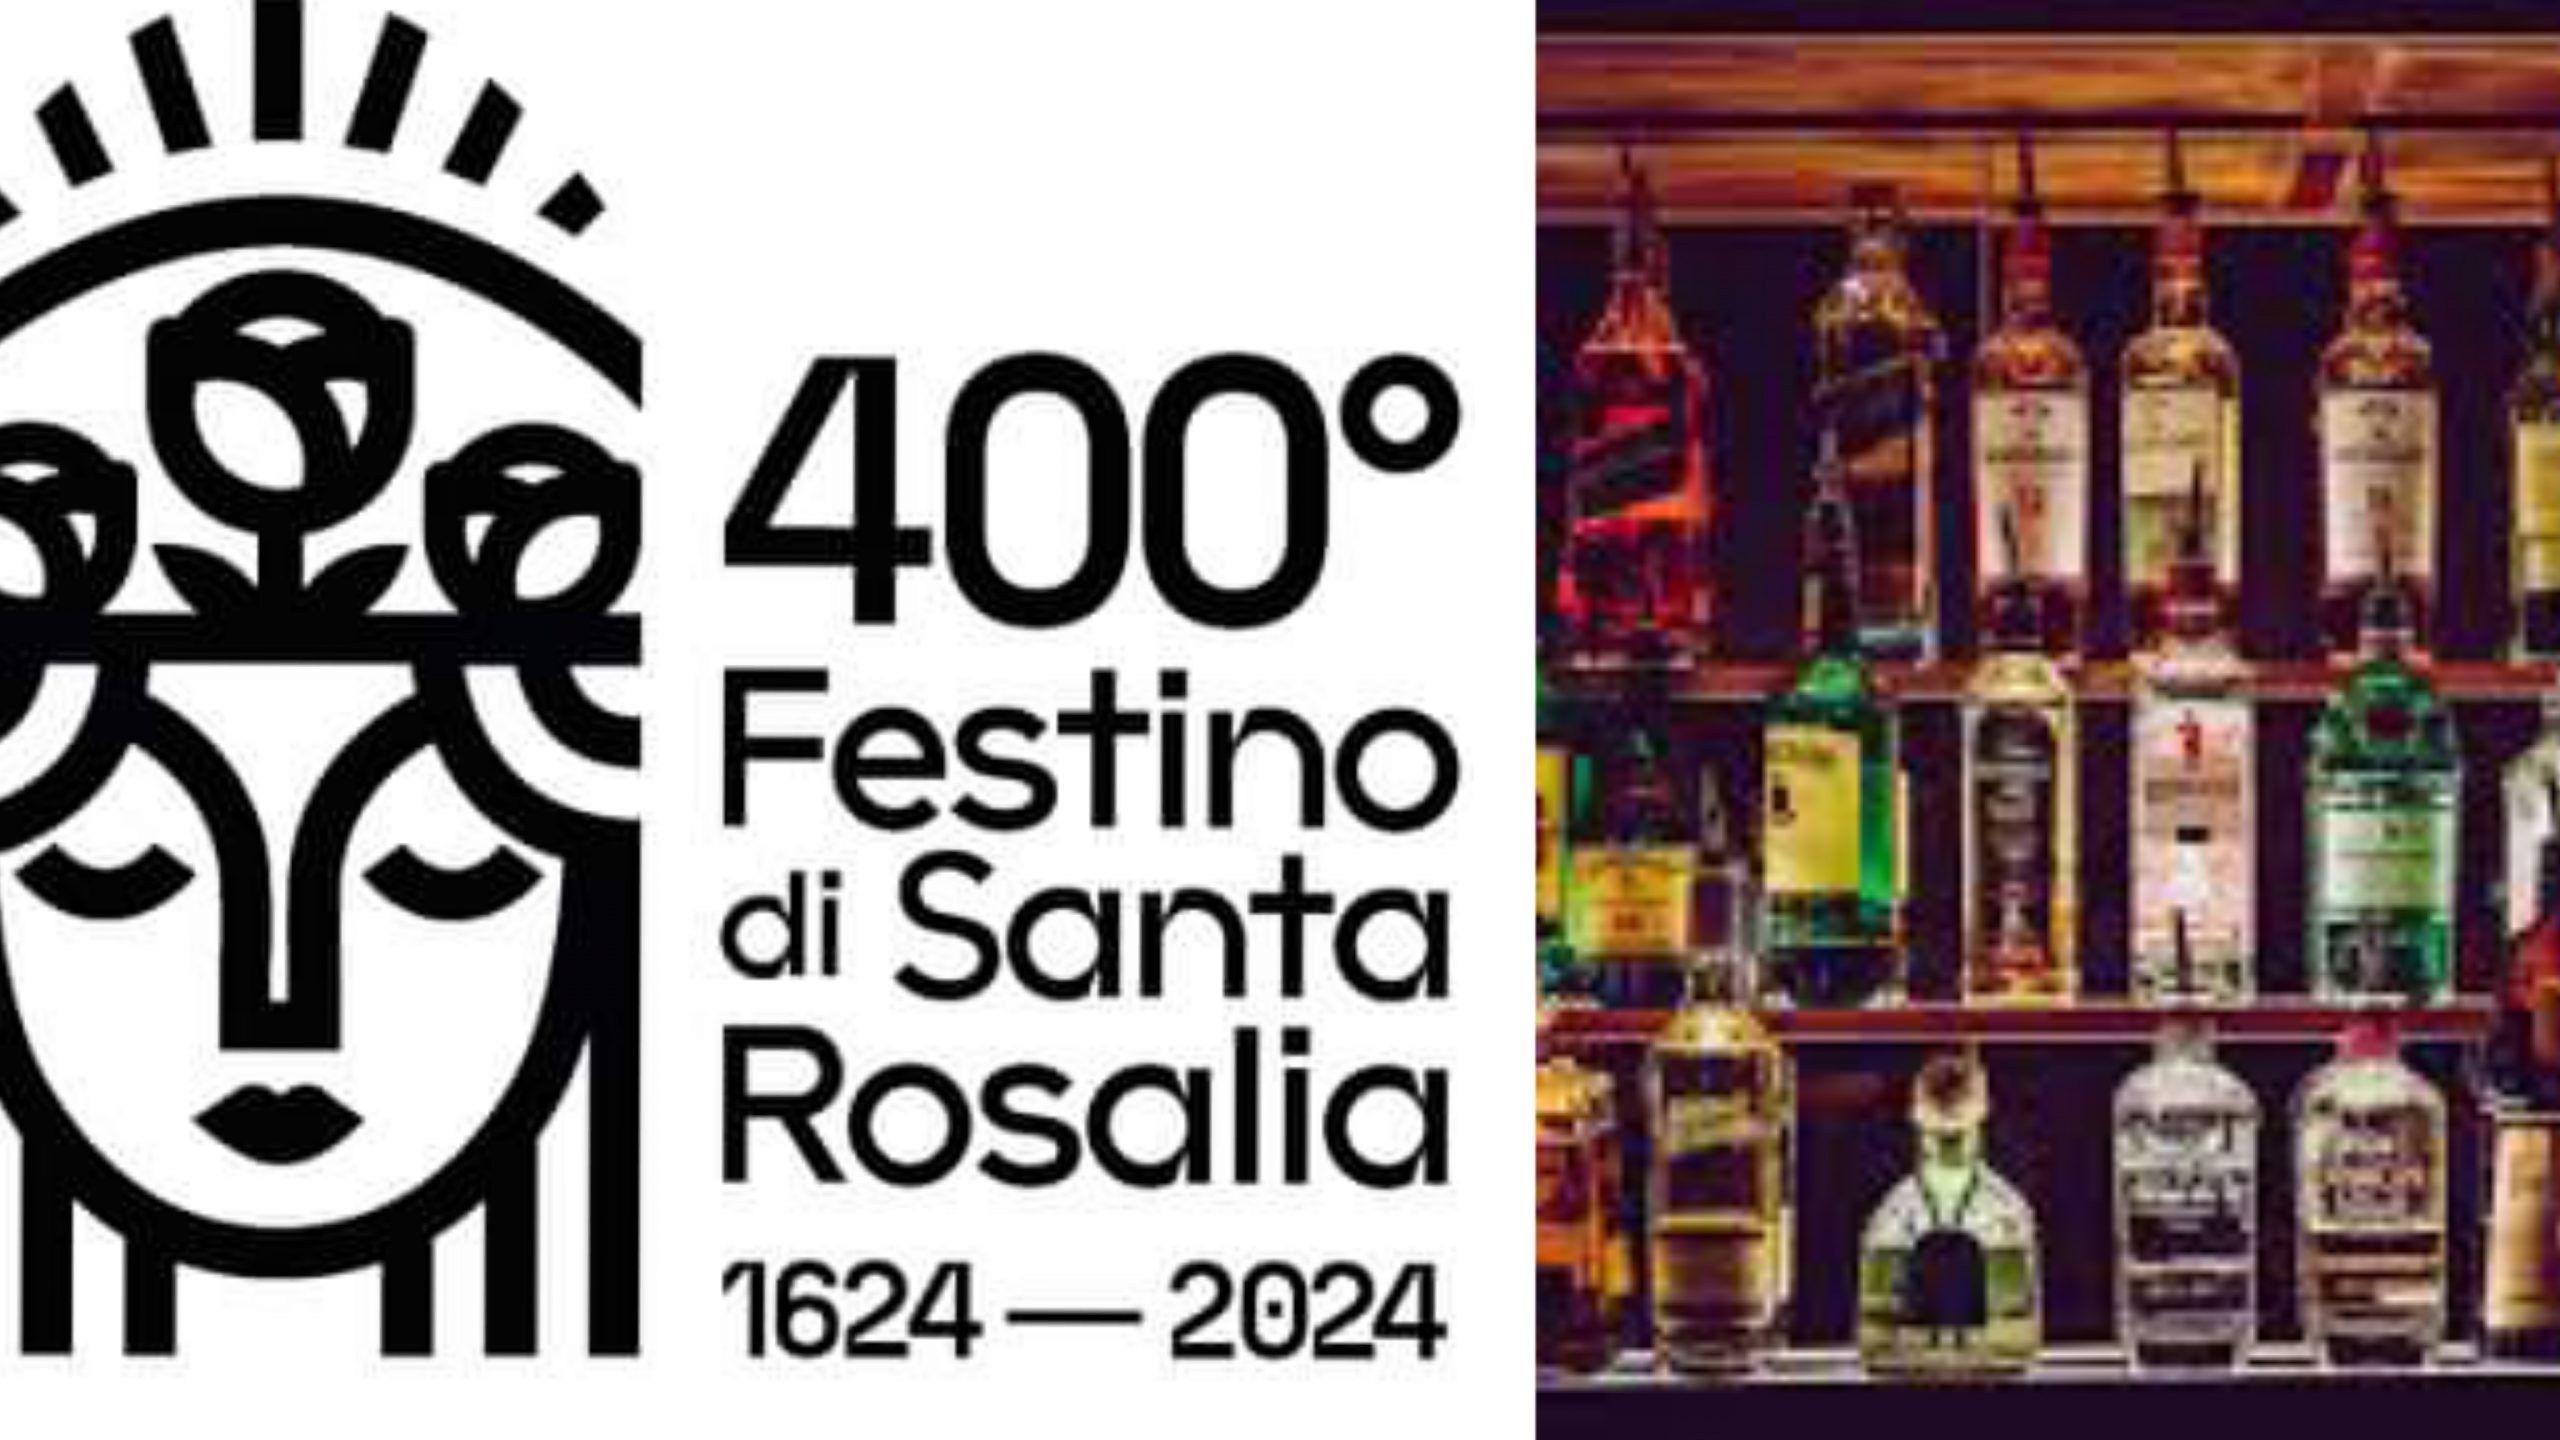 Festino di Santa Rosalia: vietata la vendita di superalcolici